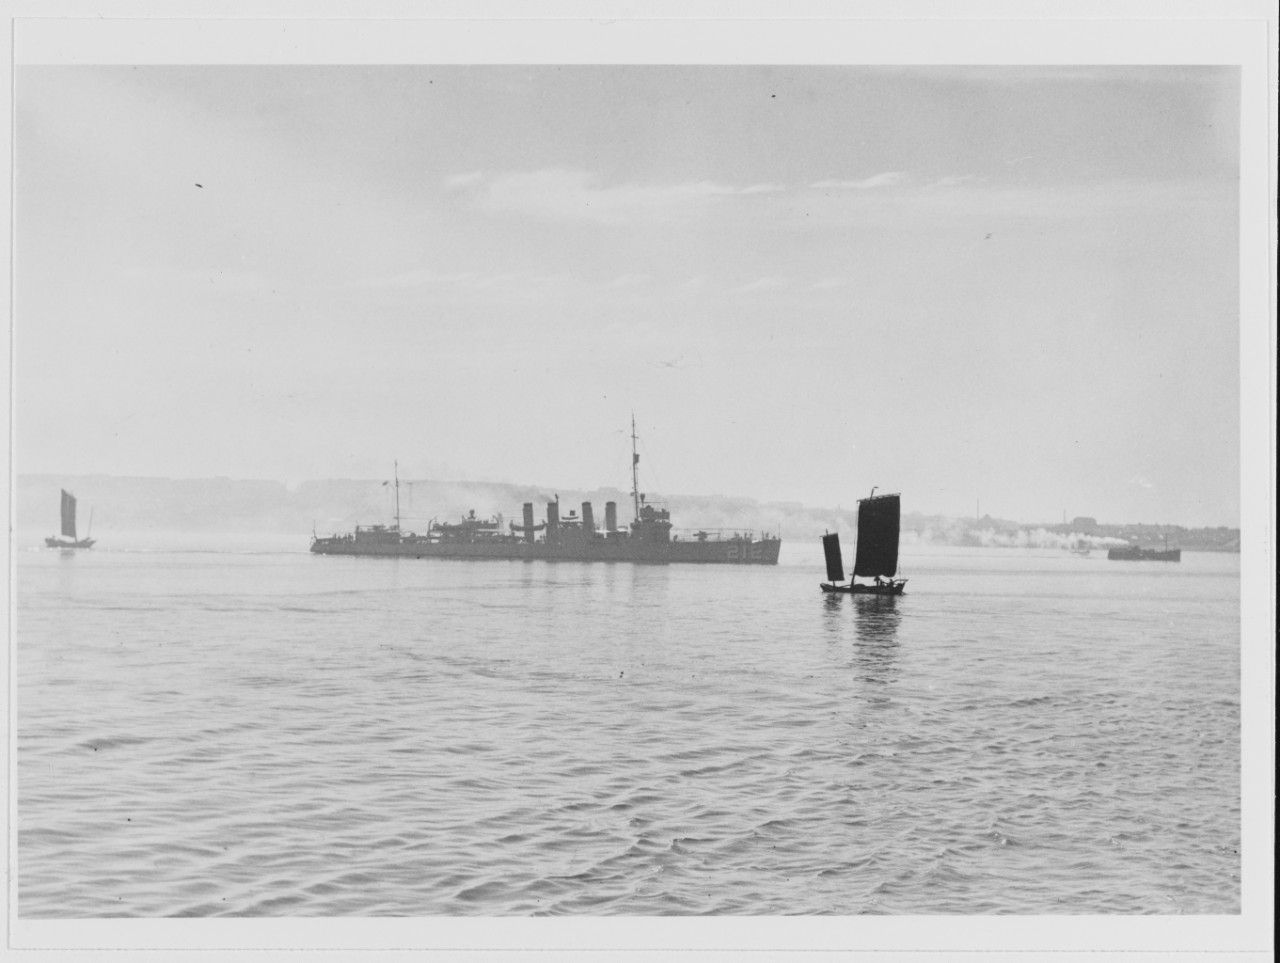 USS SMITH THOMPSON (DD-212) off Tsingtao, China, circa the mid-1930s